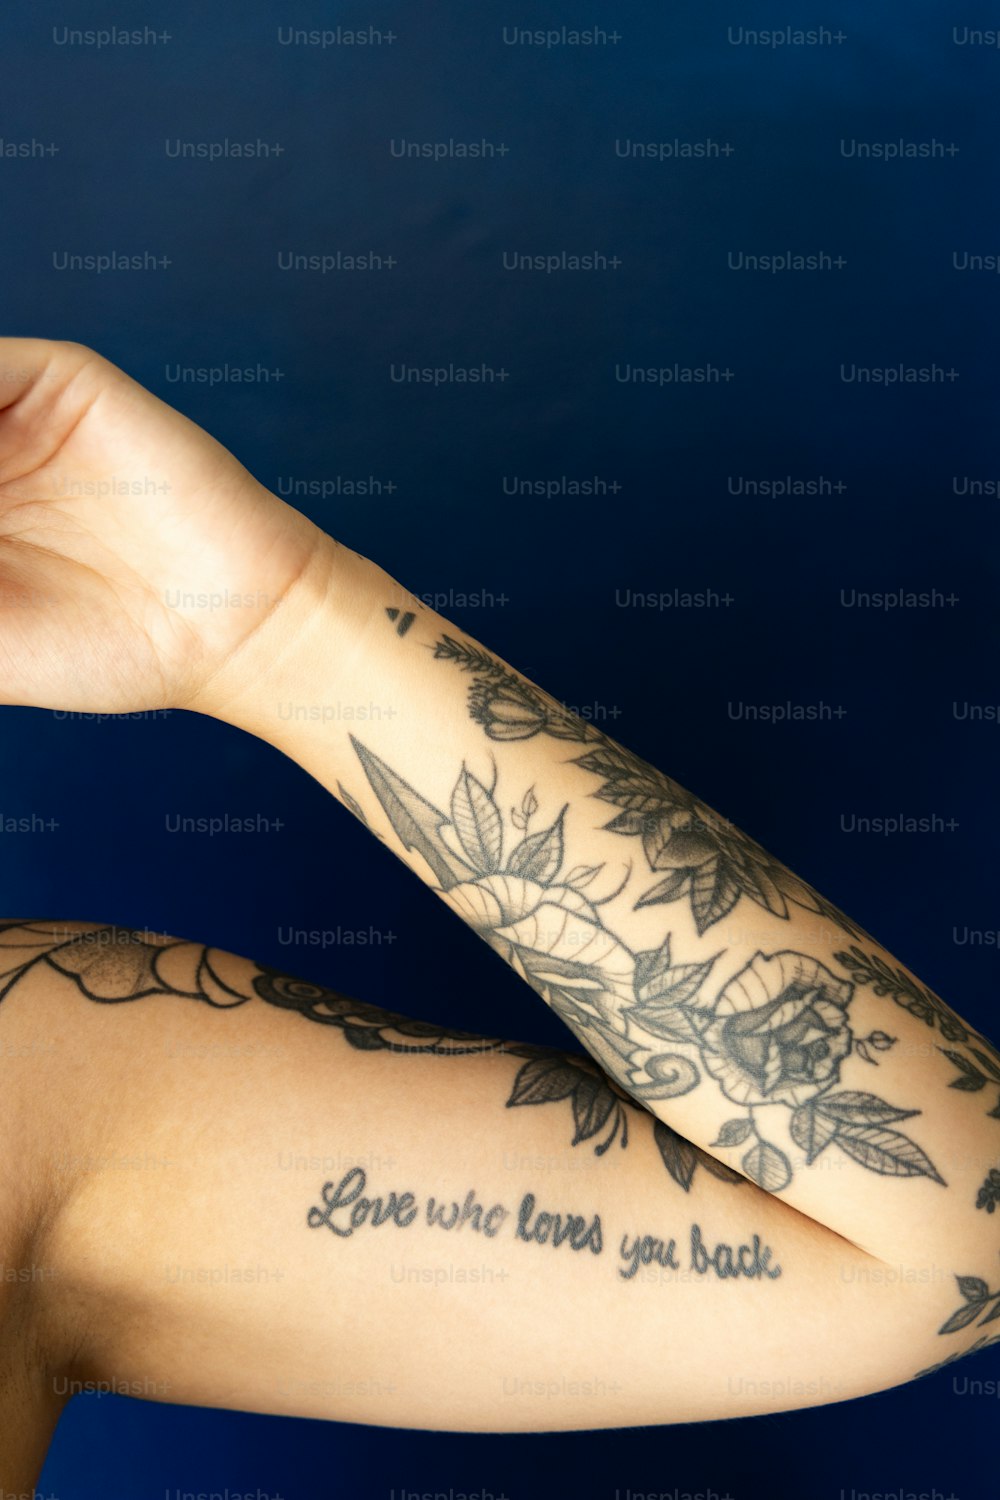 una mujer con un tatuaje en el brazo sosteniendo un teléfono celular